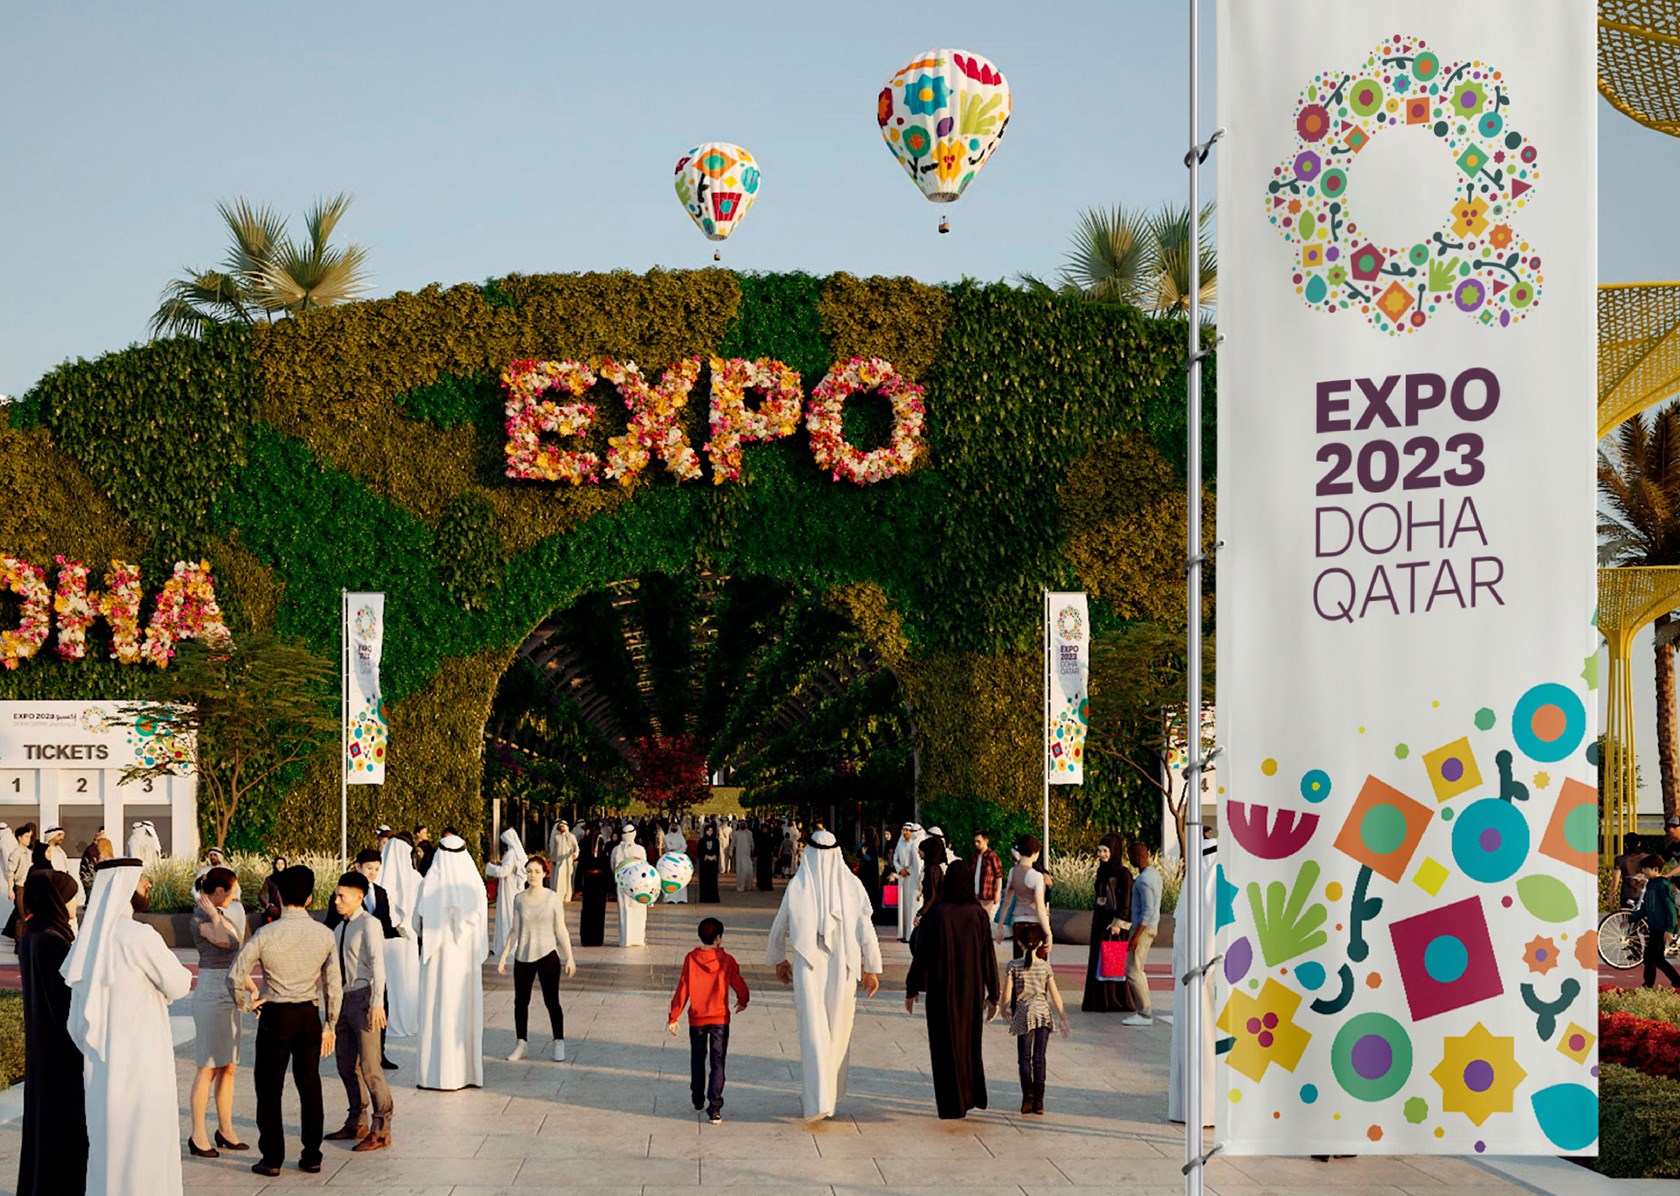 EXPO 2023 Doha Qatar –
Désert vert et environnement meilleur